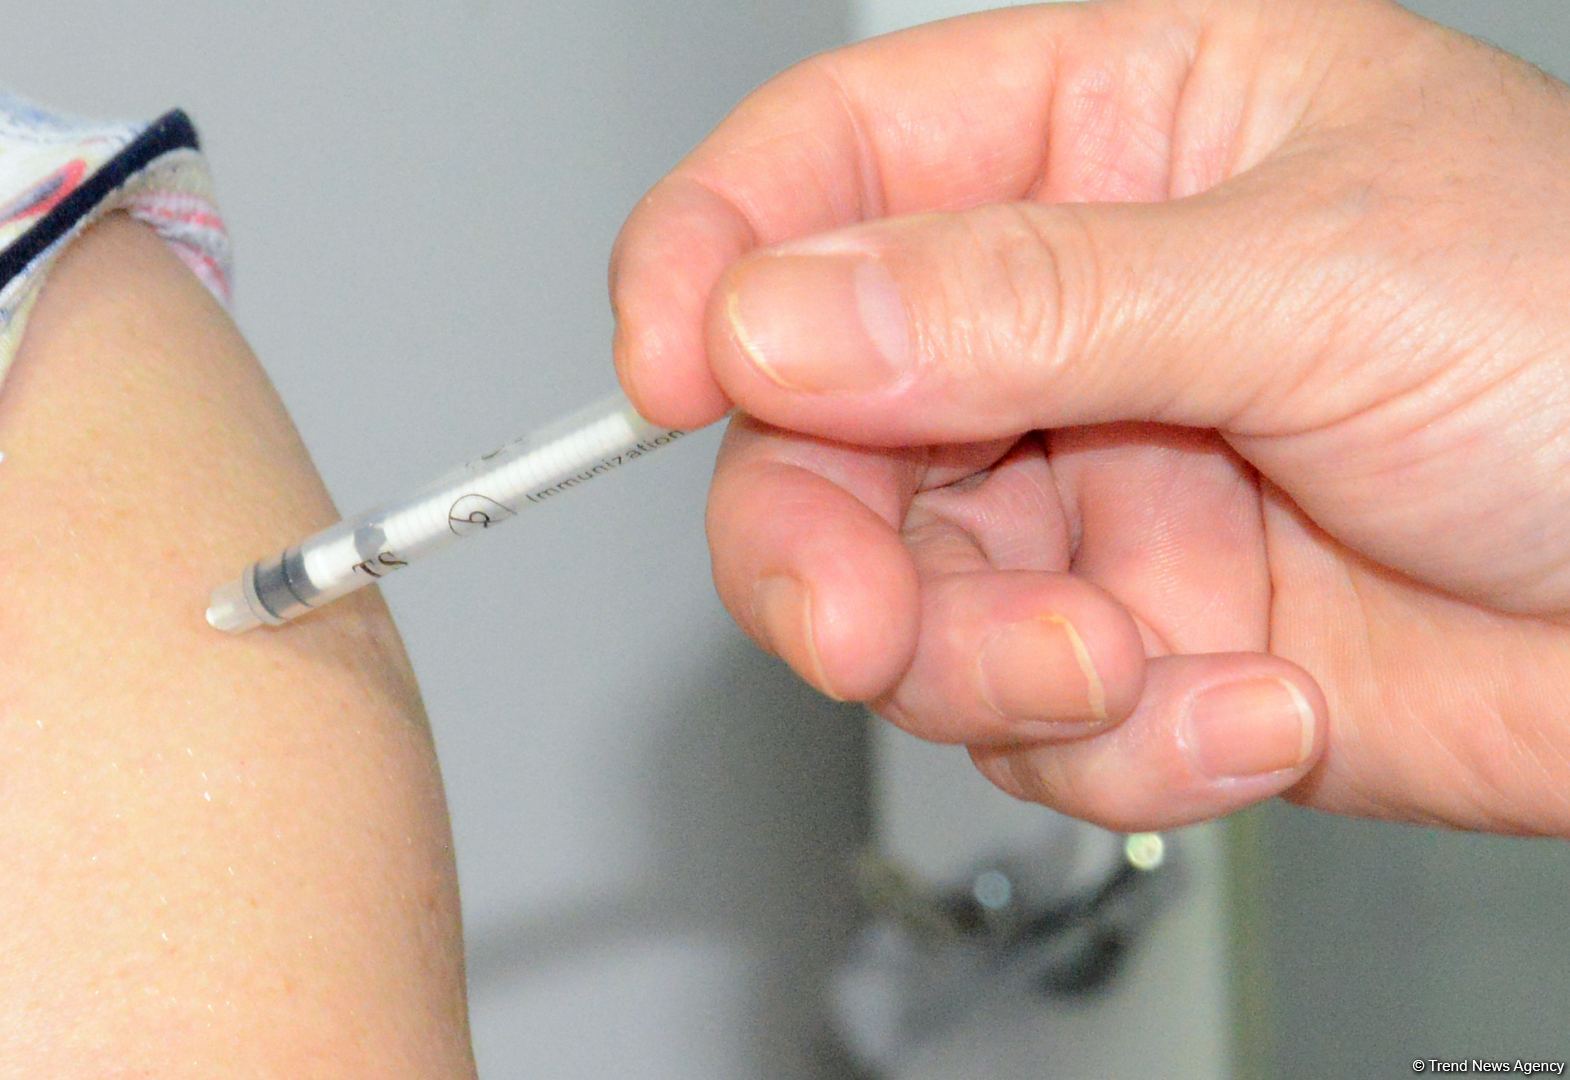 Azərbaycanda koronavirusa qarşı vaksin hazırlanır